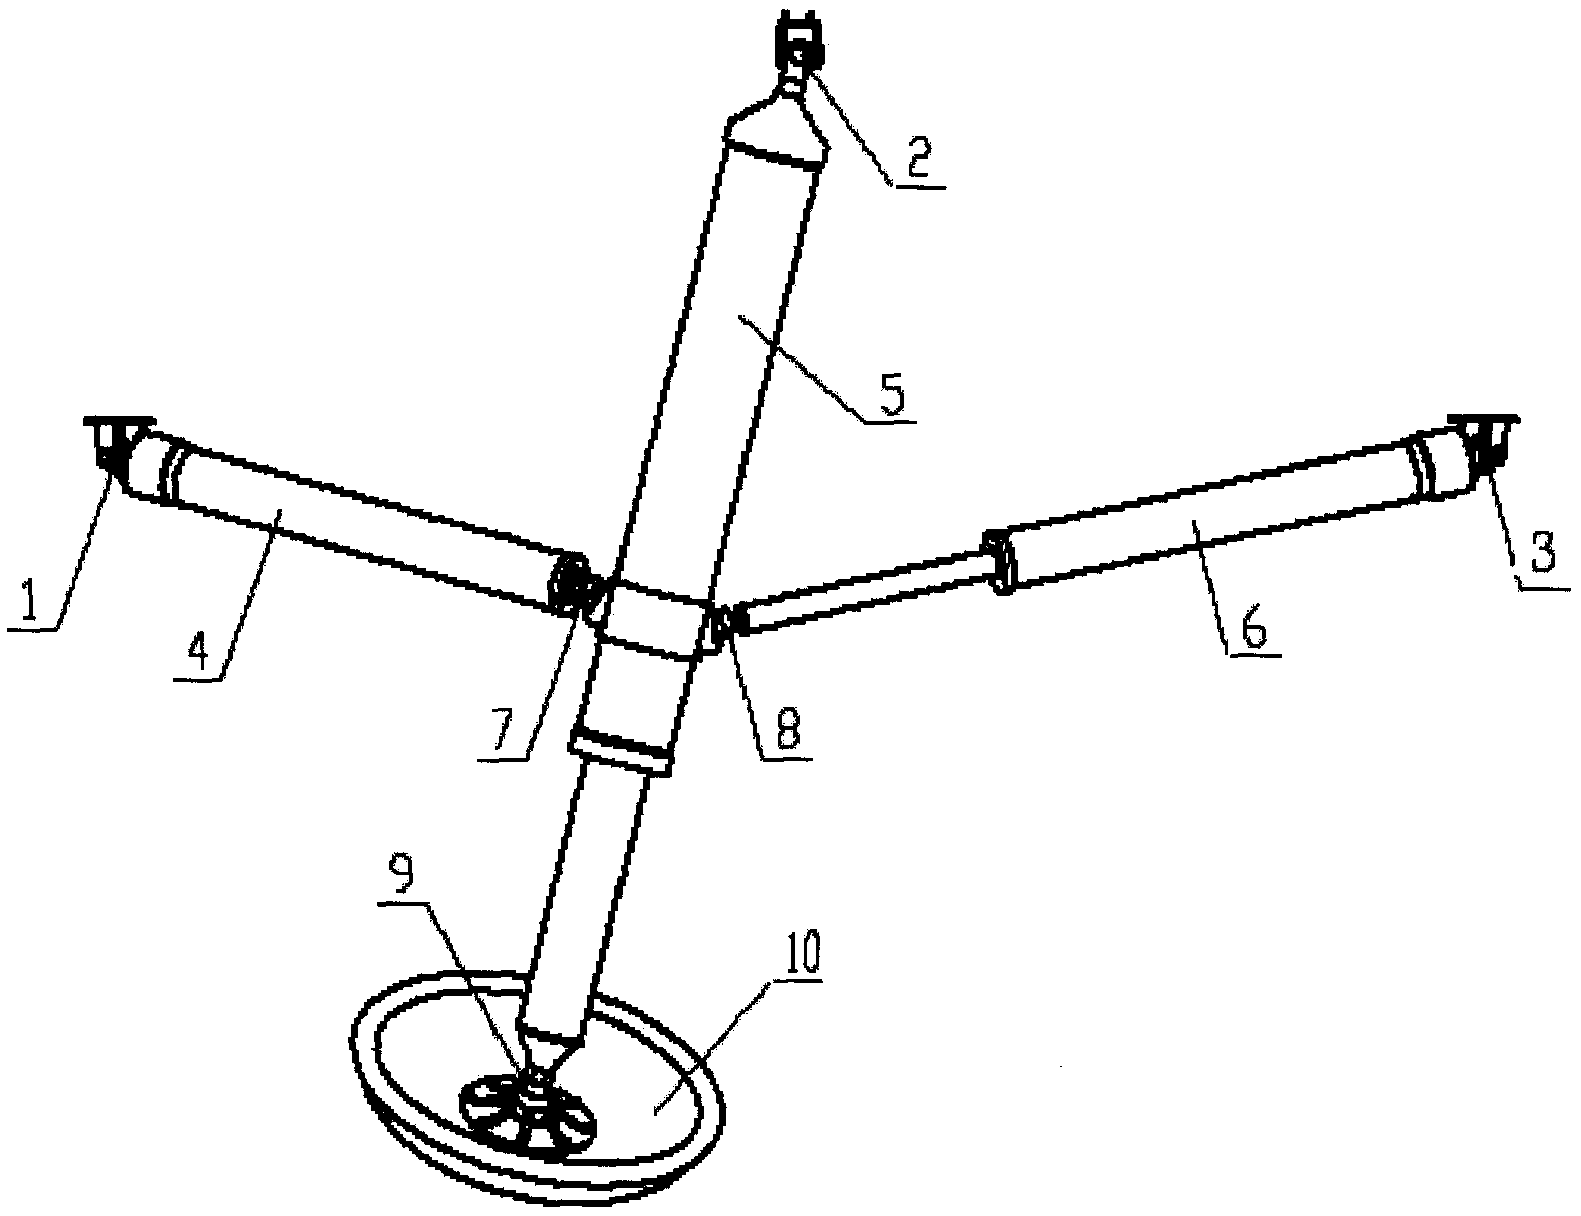 A detector landing buffer mechanism